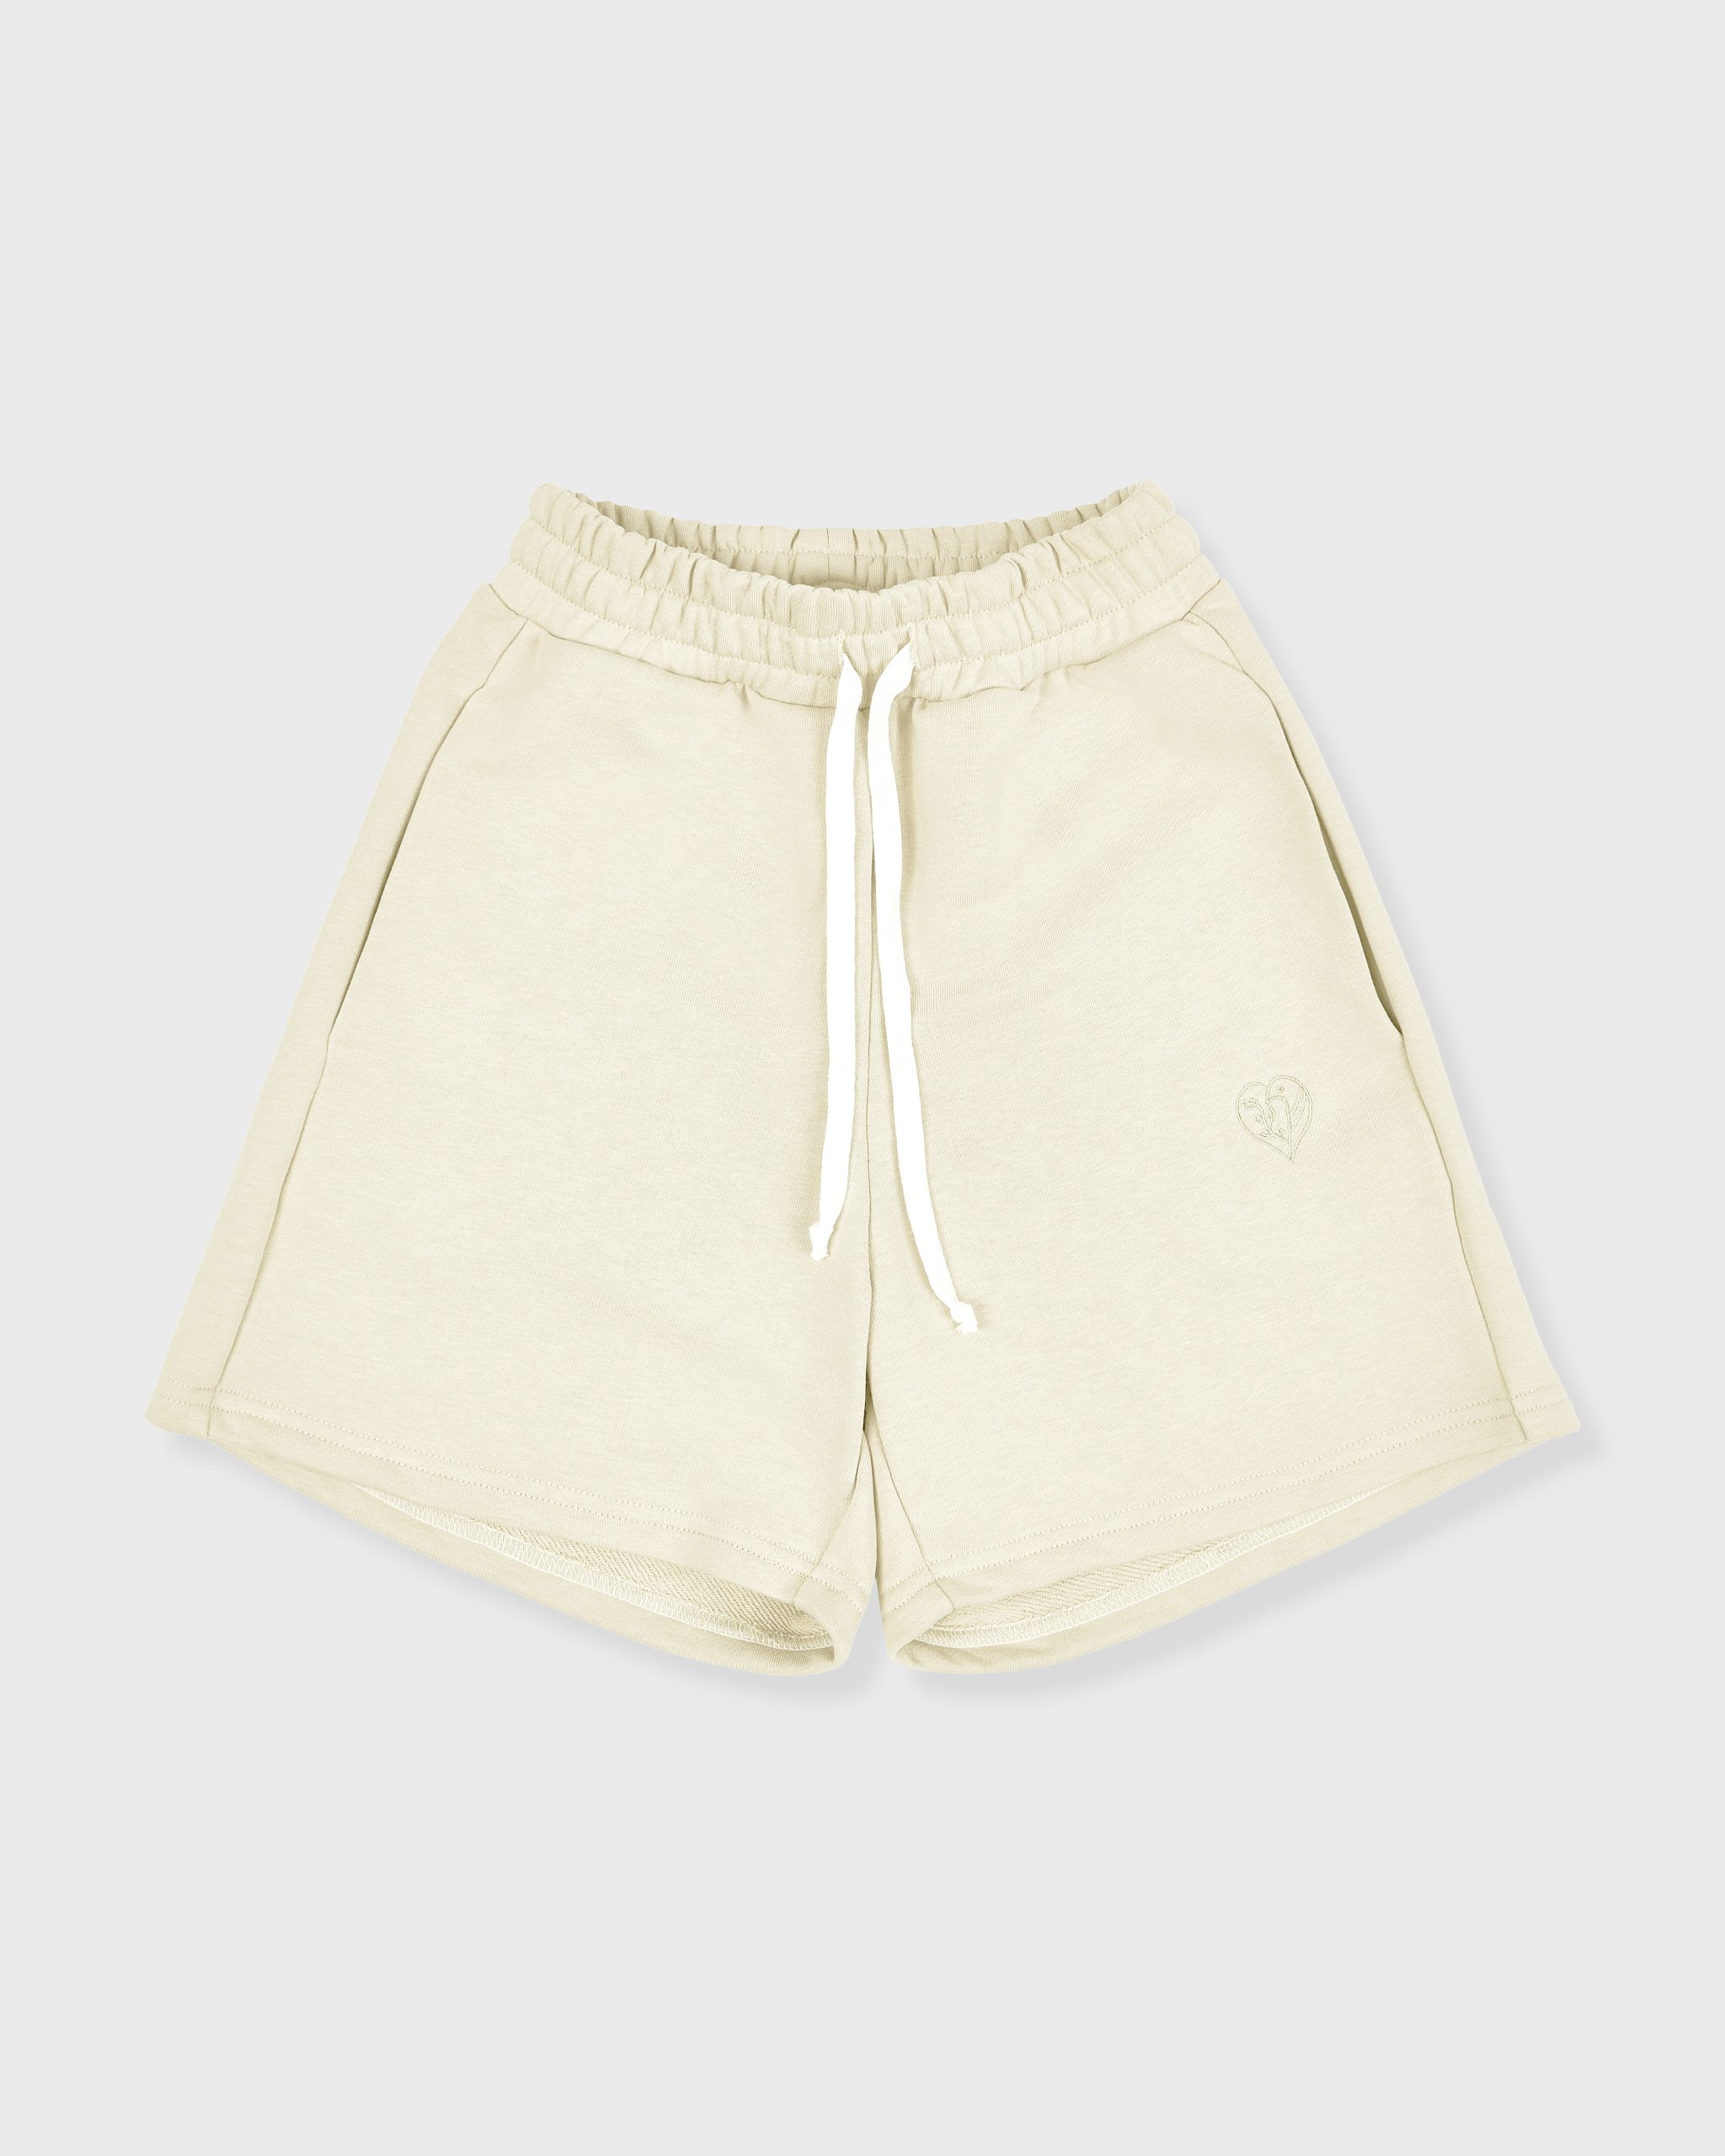 Повседневные шорты женские Atmosphere Summer vibes белые XL